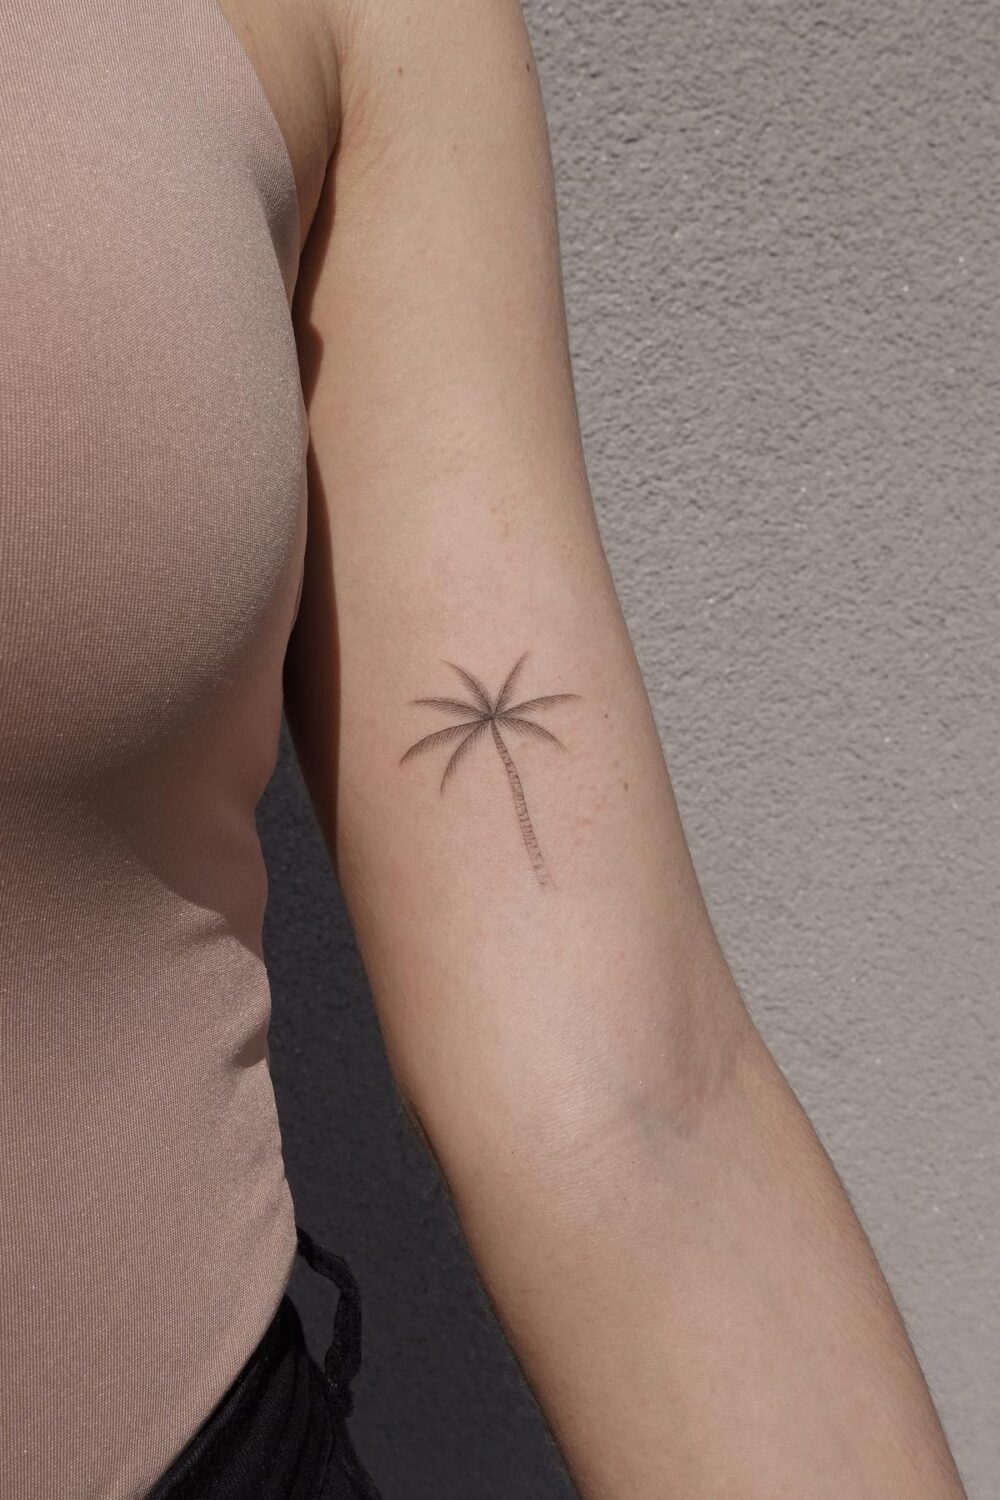 Minimalist palm tree tattoo